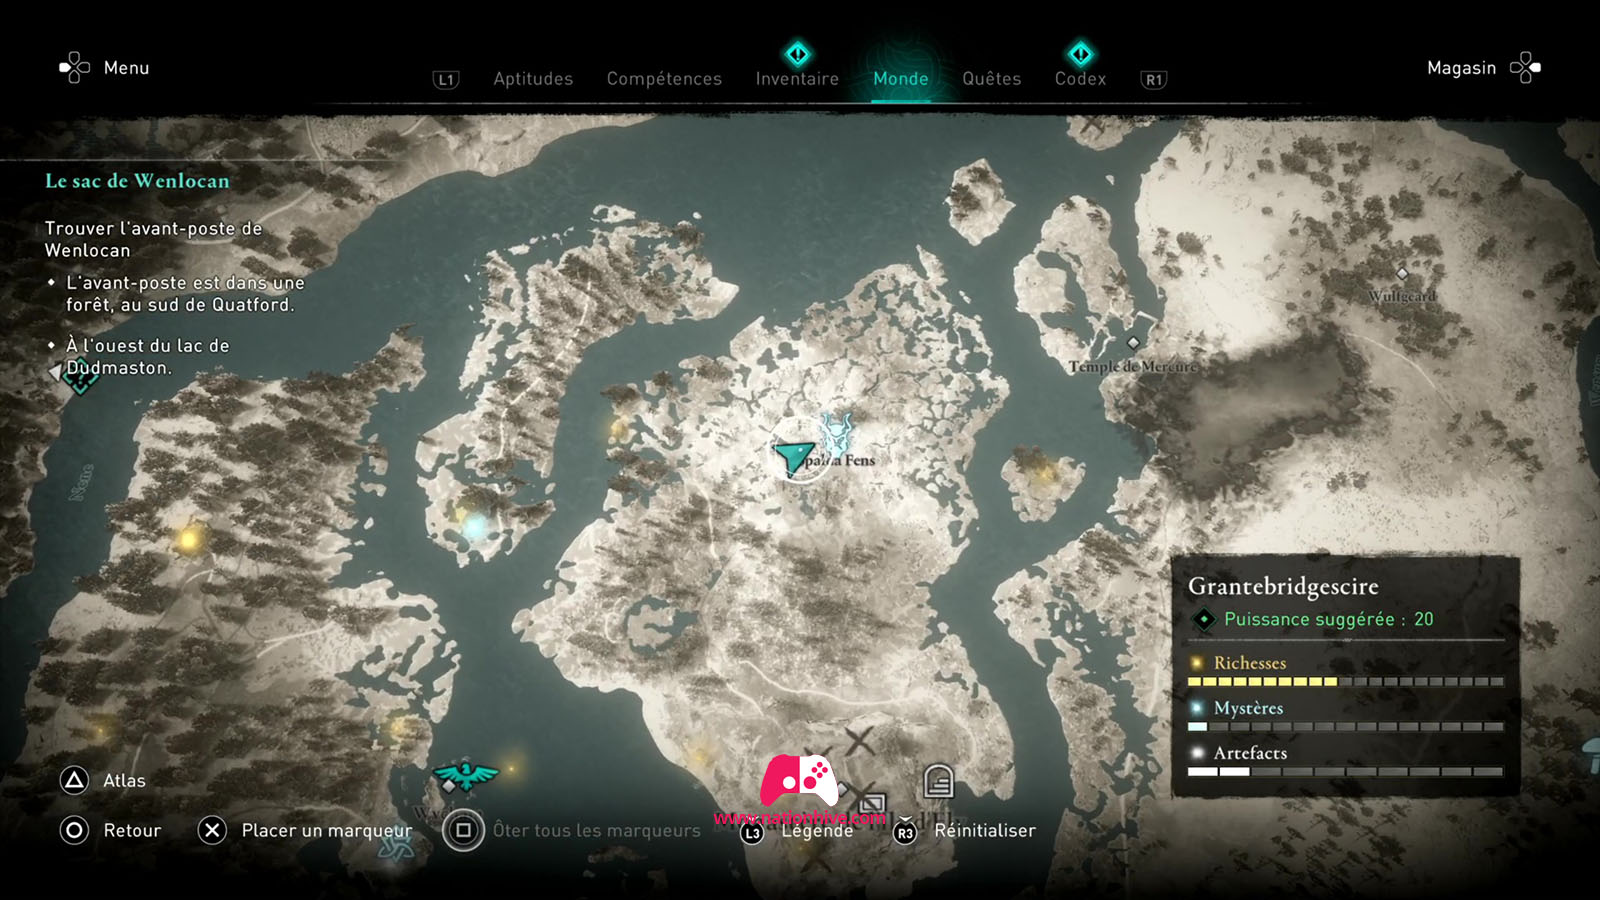 Assassins Creed Valhalla улучшения поселения до 6 уровня.